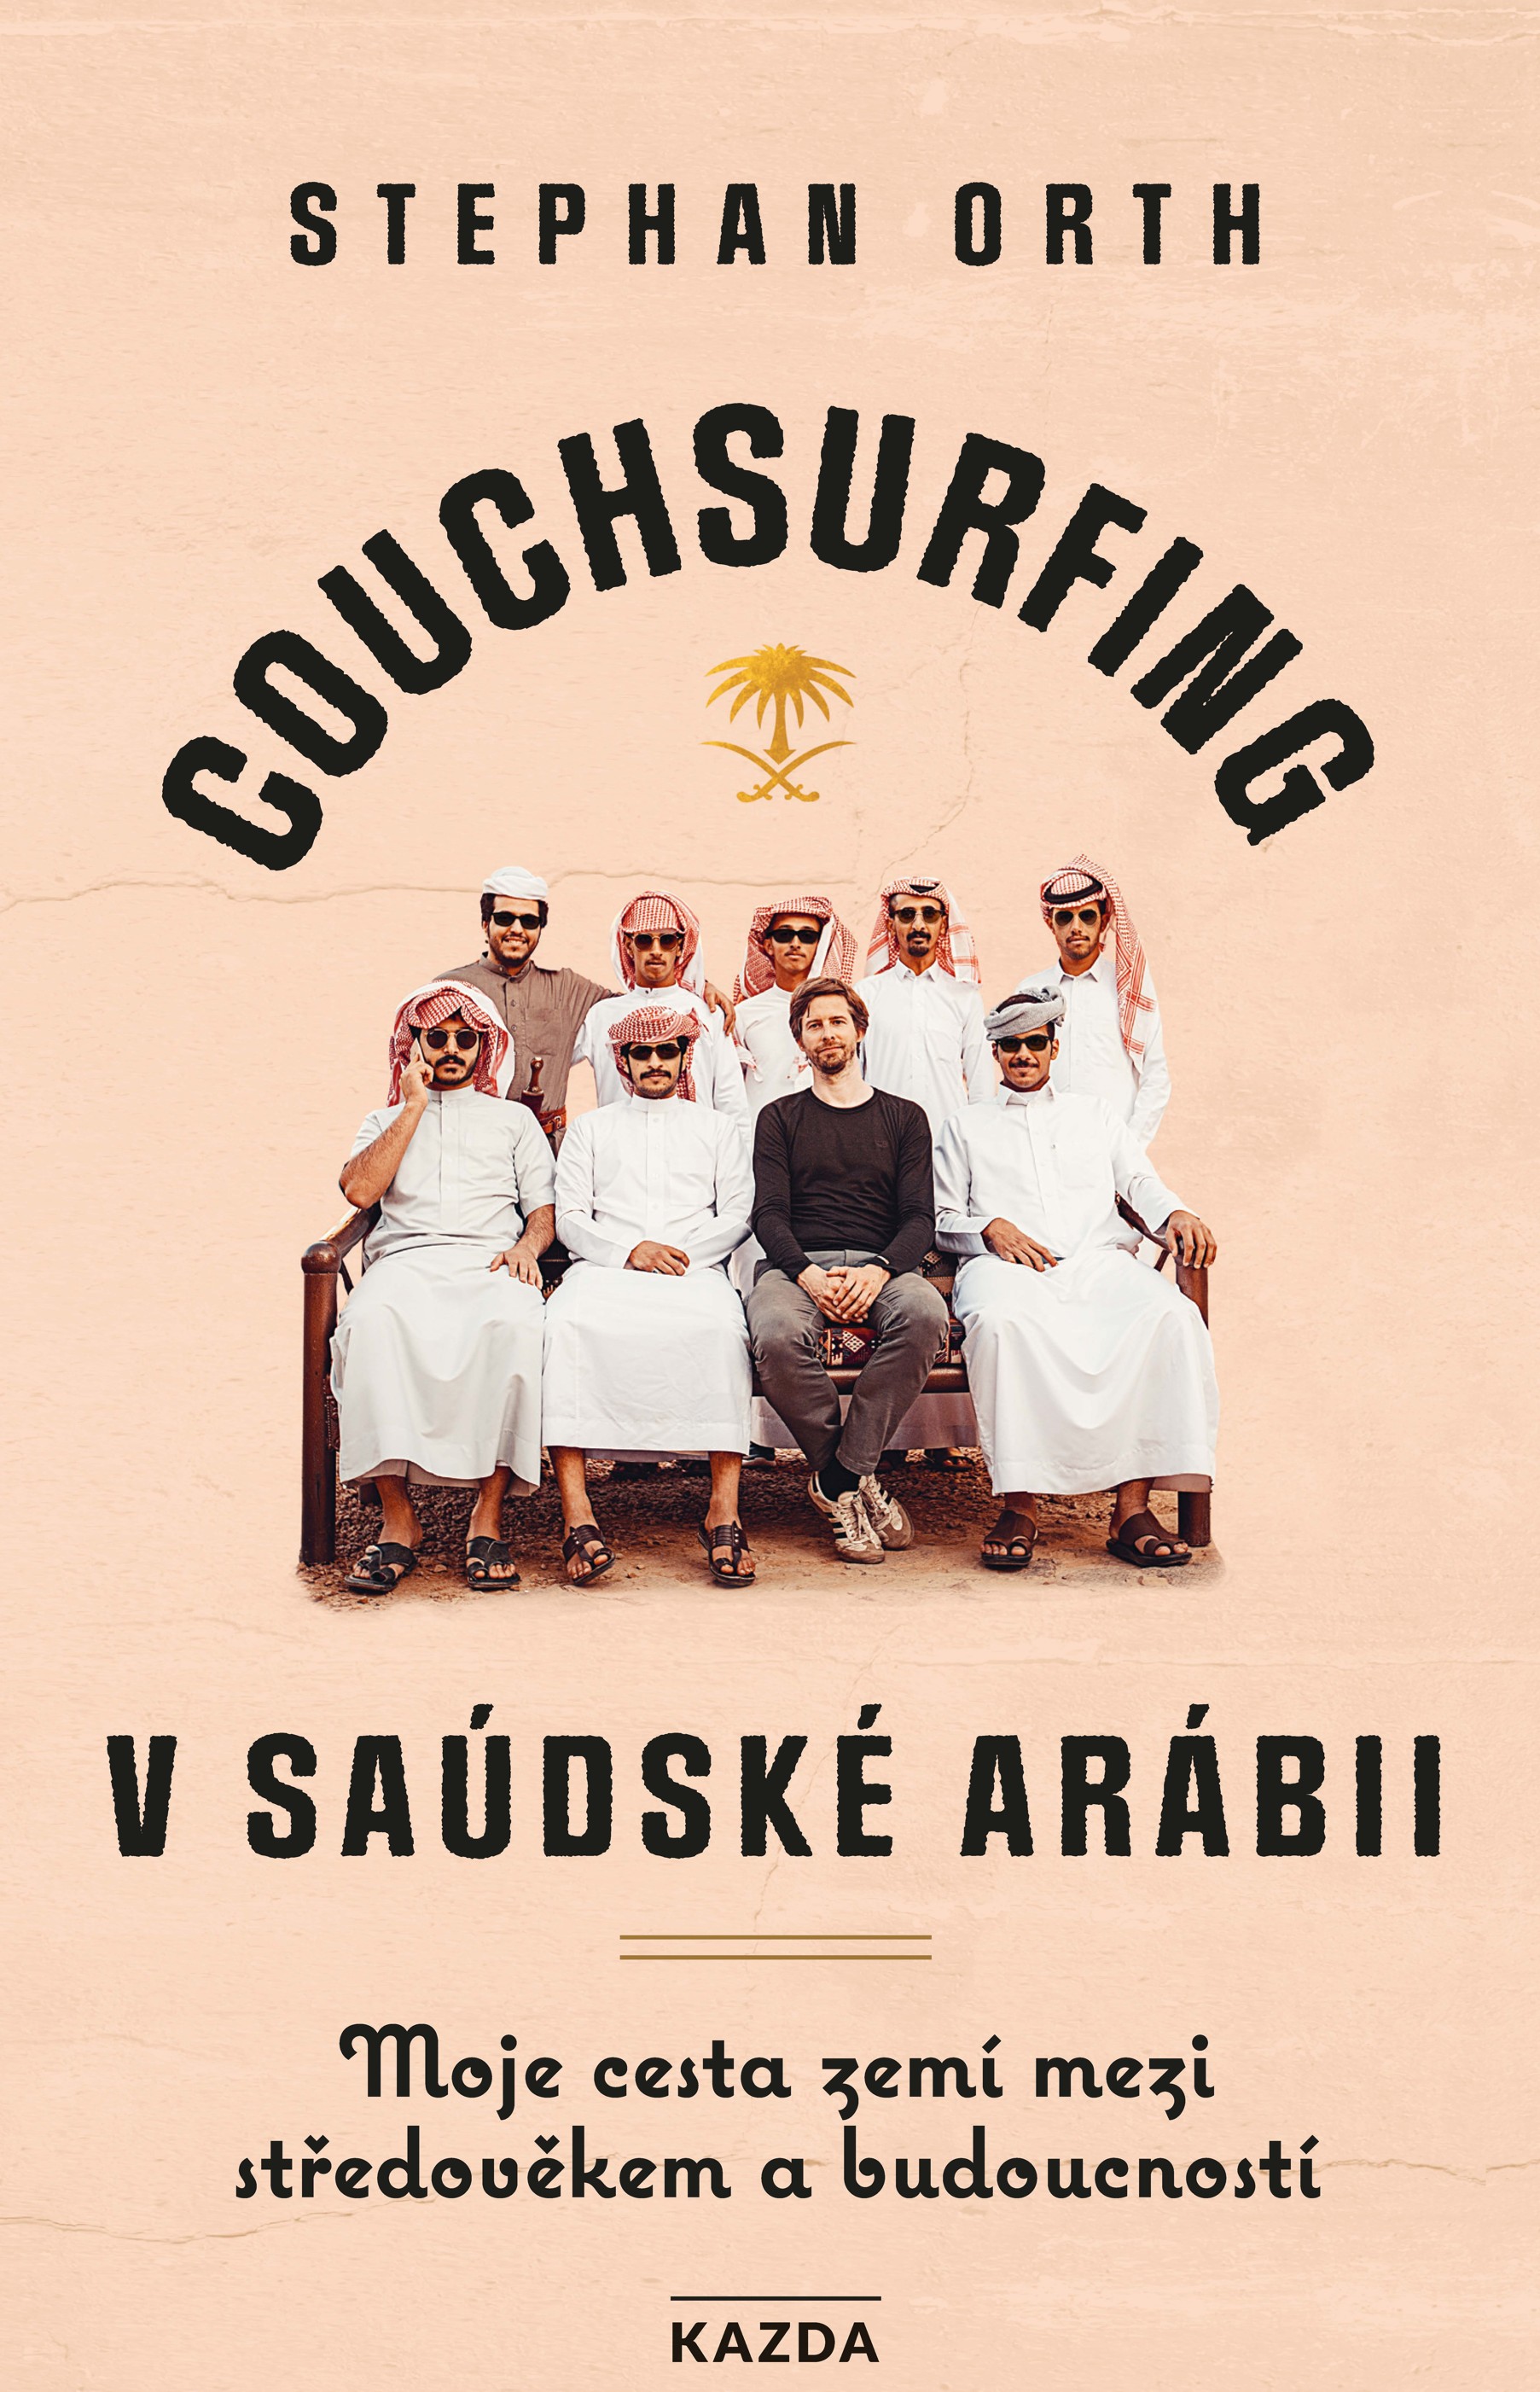 E-kniha Couchsurfing v Saúdské Arábii - Stephan Orth